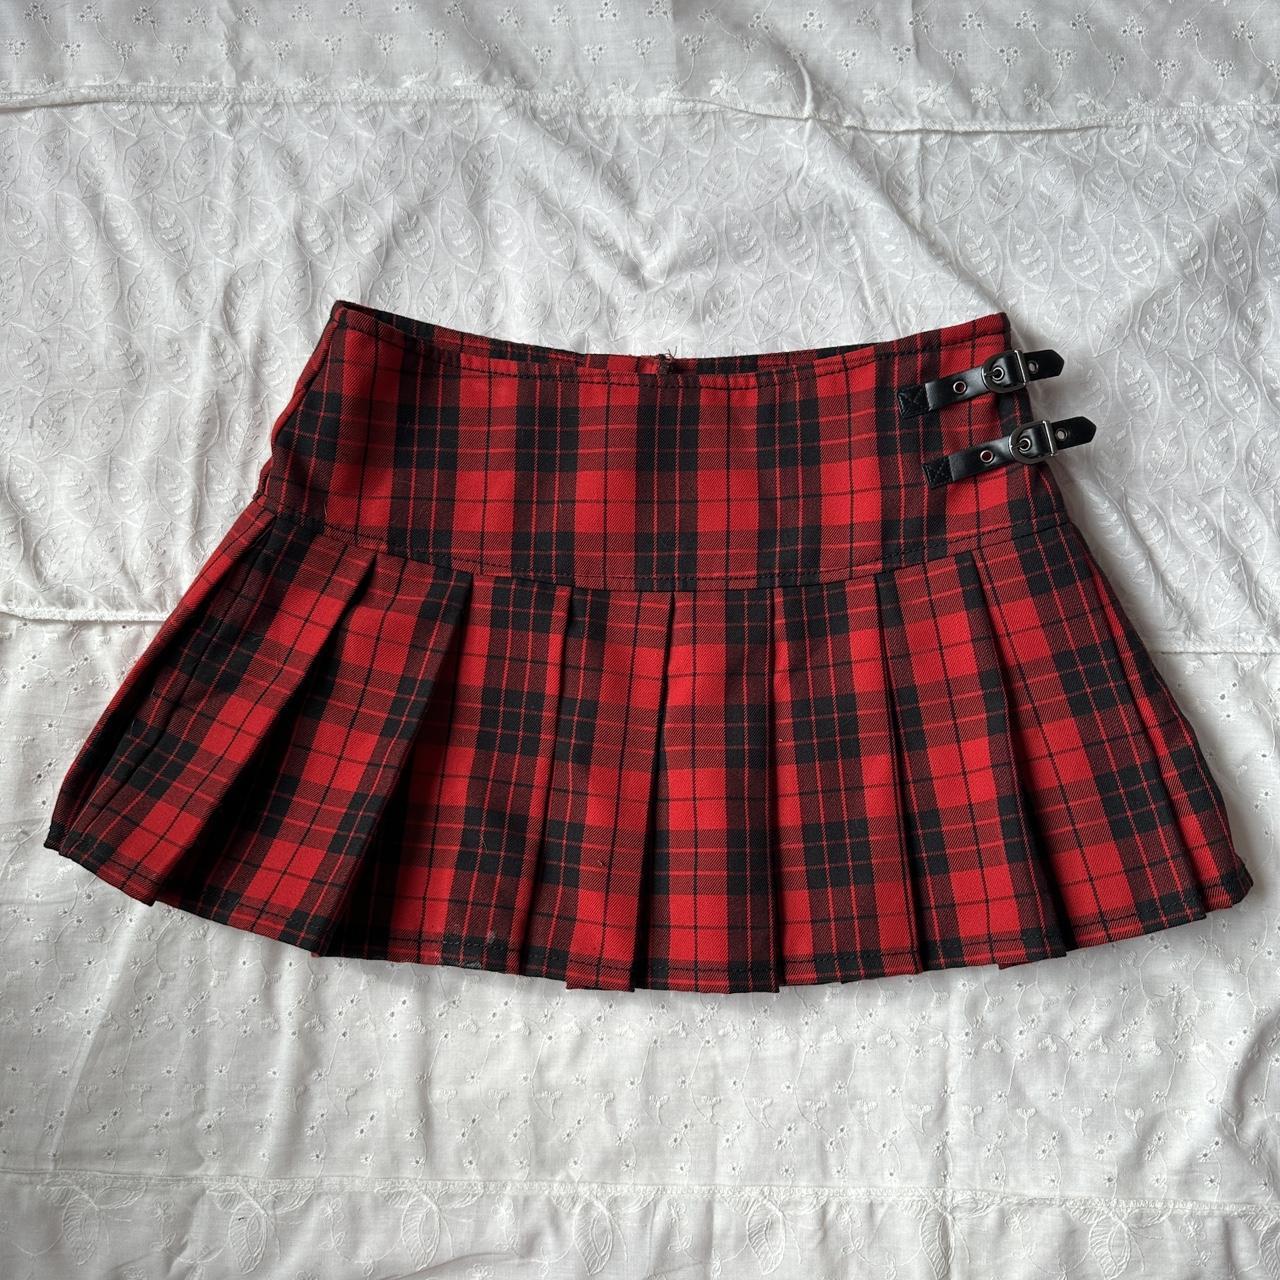 vintage y2k plaid mini micro skirt this pleated... - Depop